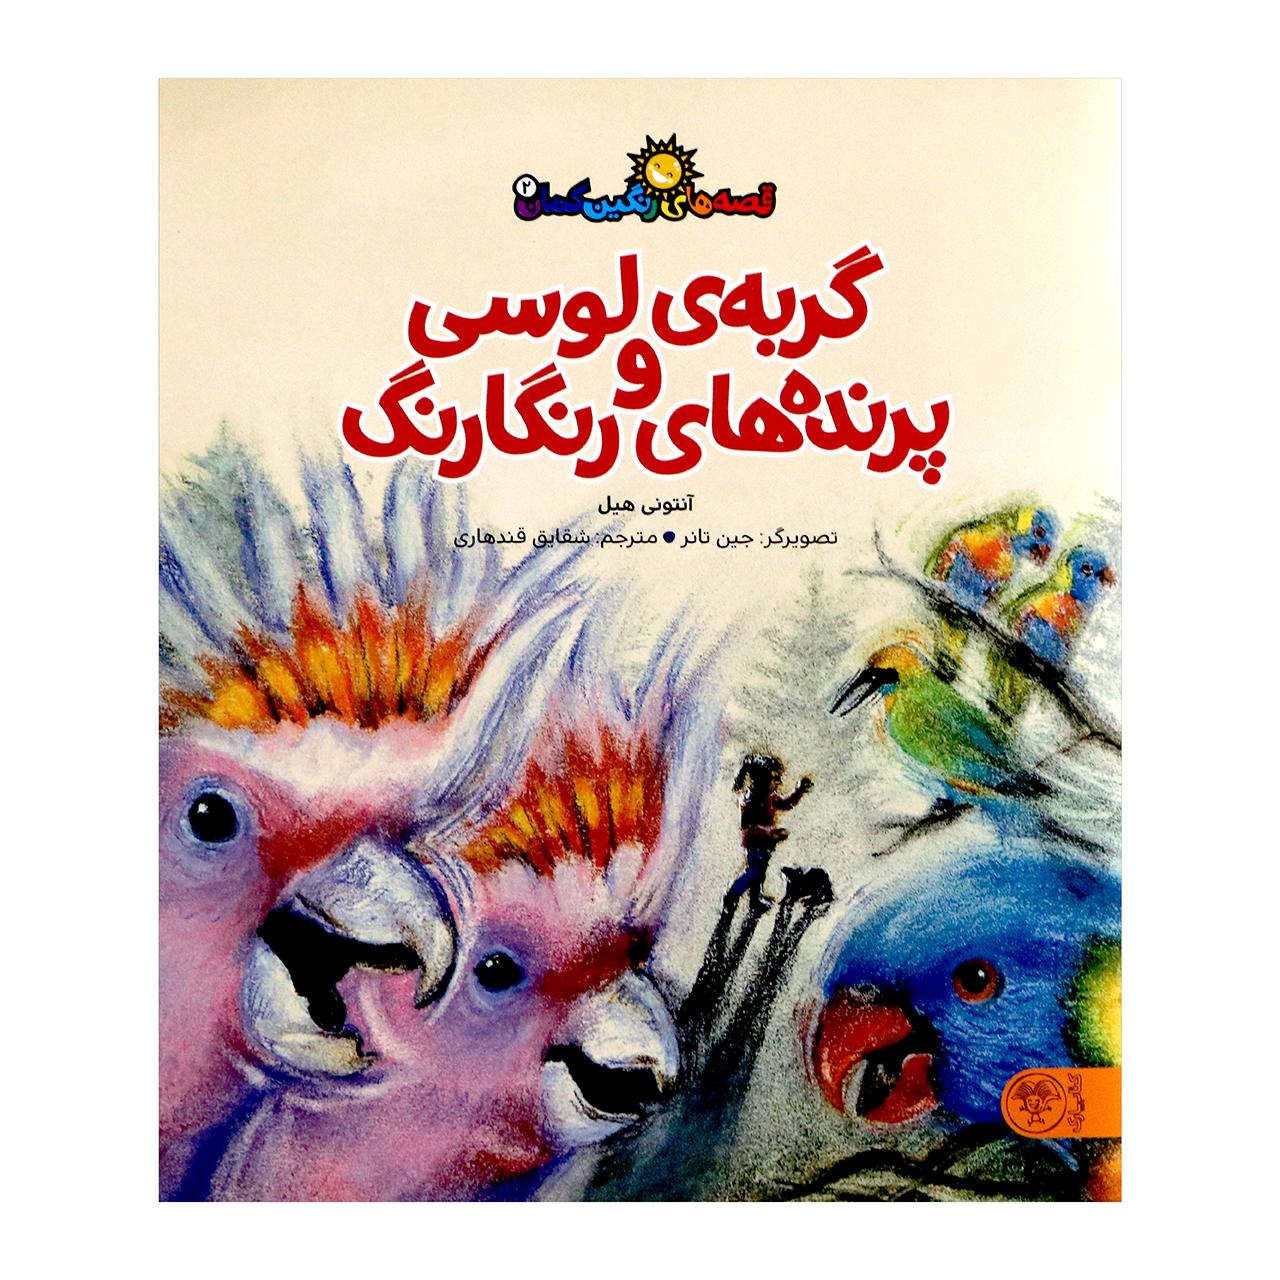 کتاب گربه ی لوسی و پرنده های رنگارنگ اثر آنتونی هیل از انتشارات کتاب پارک